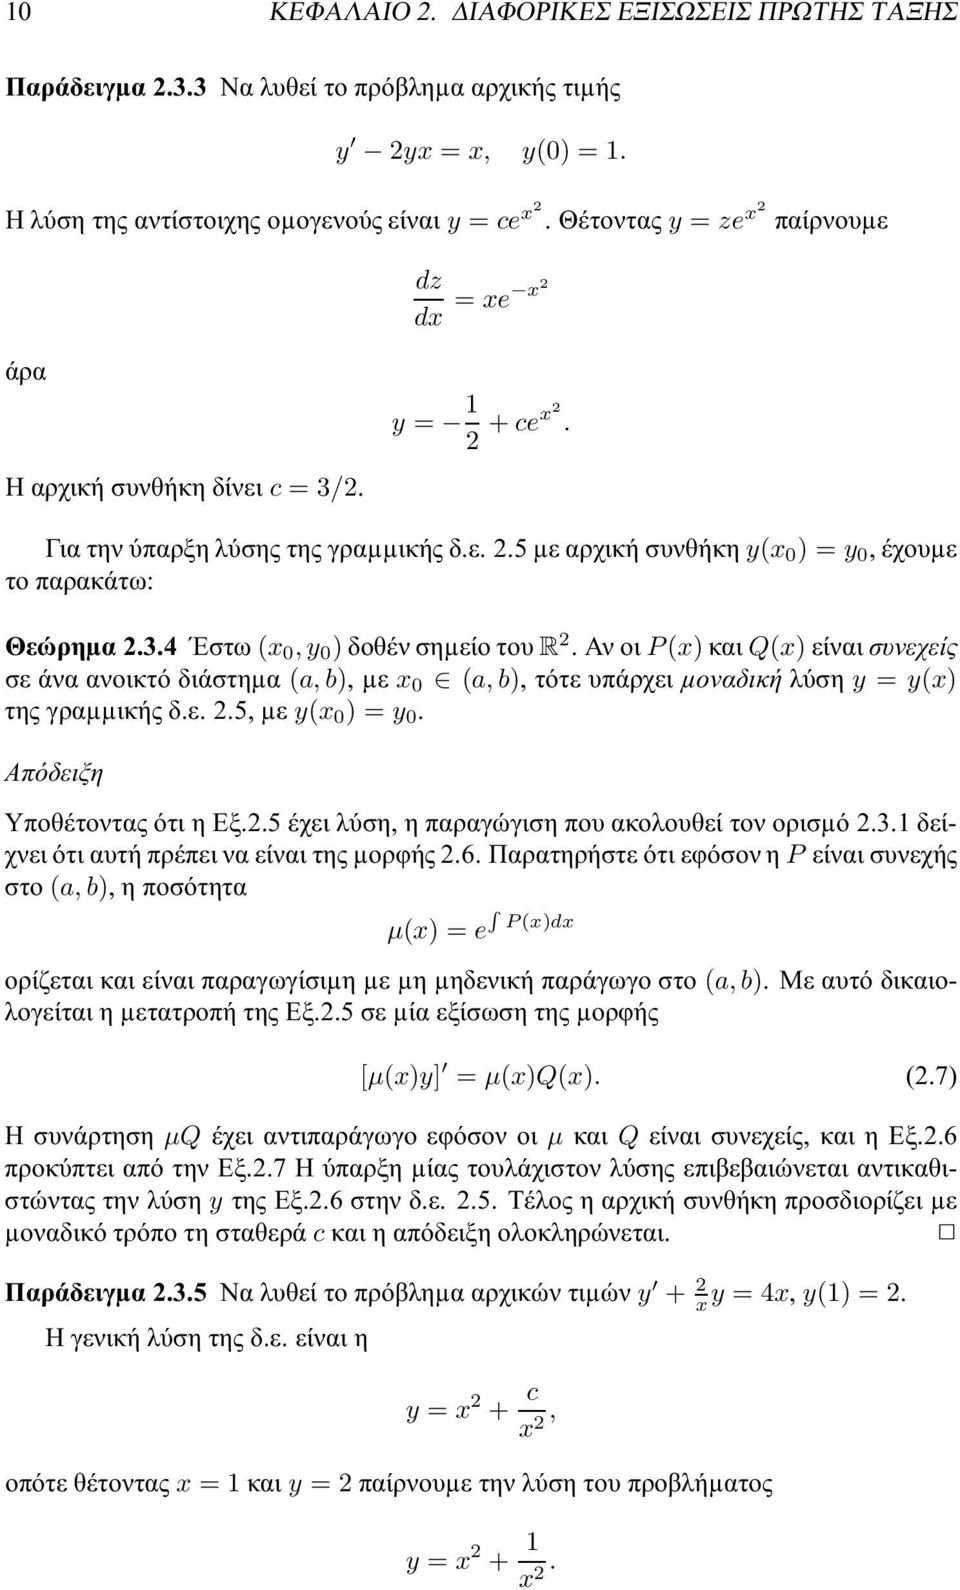 ΑνοιP(x)καιQ(x)είναισυνεχείς σεάναανοικτόδιάστηµα (a,b),µε x 0 (a,b),τότευπάρχειµοναδικήλύση y = y(x) τηςγραµµικήςδ.ε.2.5,µε y(x 0 ) = y 0. Απόδειξη Υποθέτοντας ότι η Εξ.2.5 έχει λύση, η παραγώγιση που ακολουθεί τον ορισµό 2.